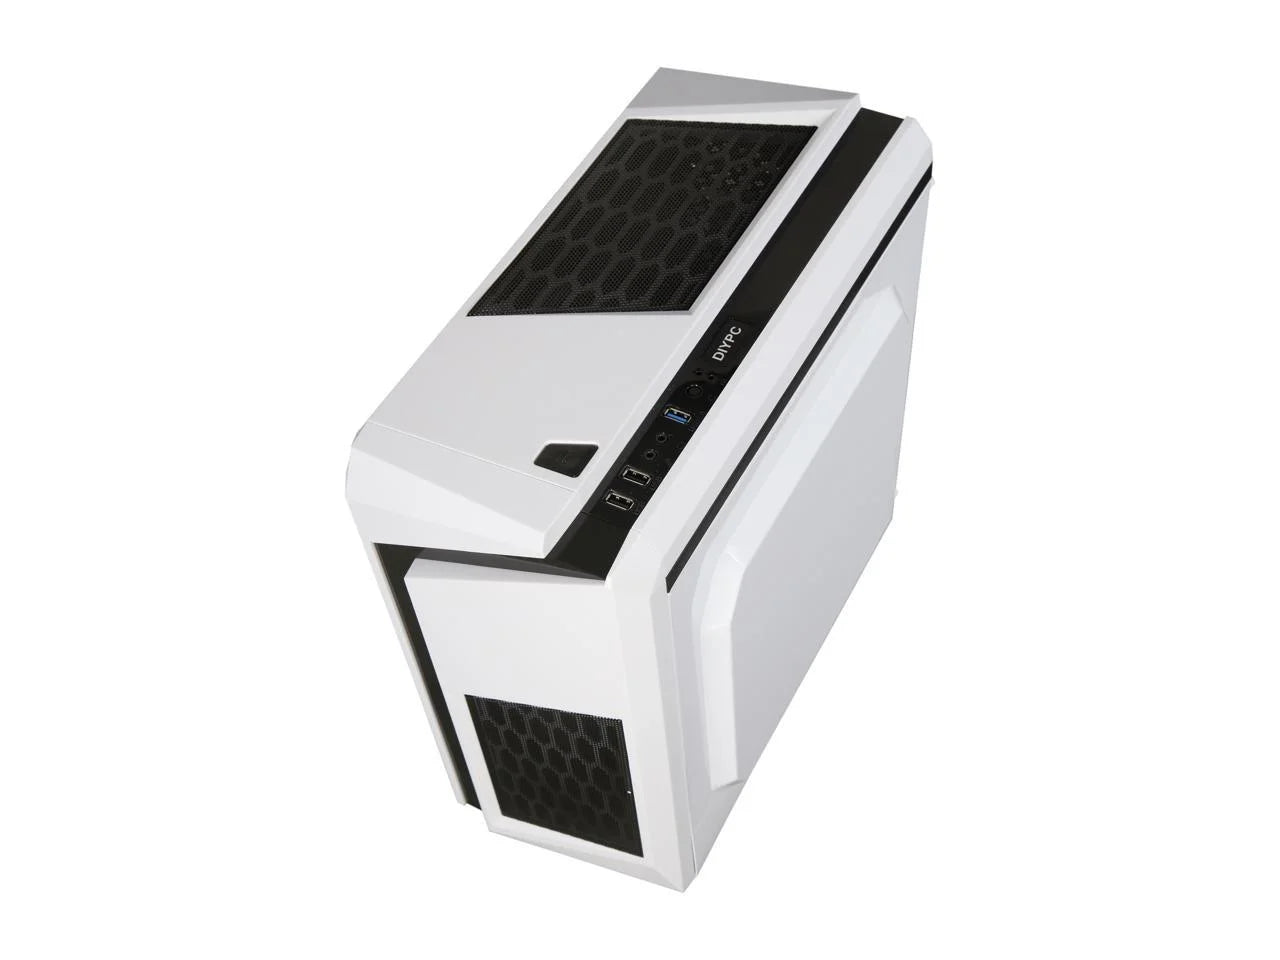 DIYPC-F2-W White SPCC Micro ATX Mini Tower Computer Pc Case